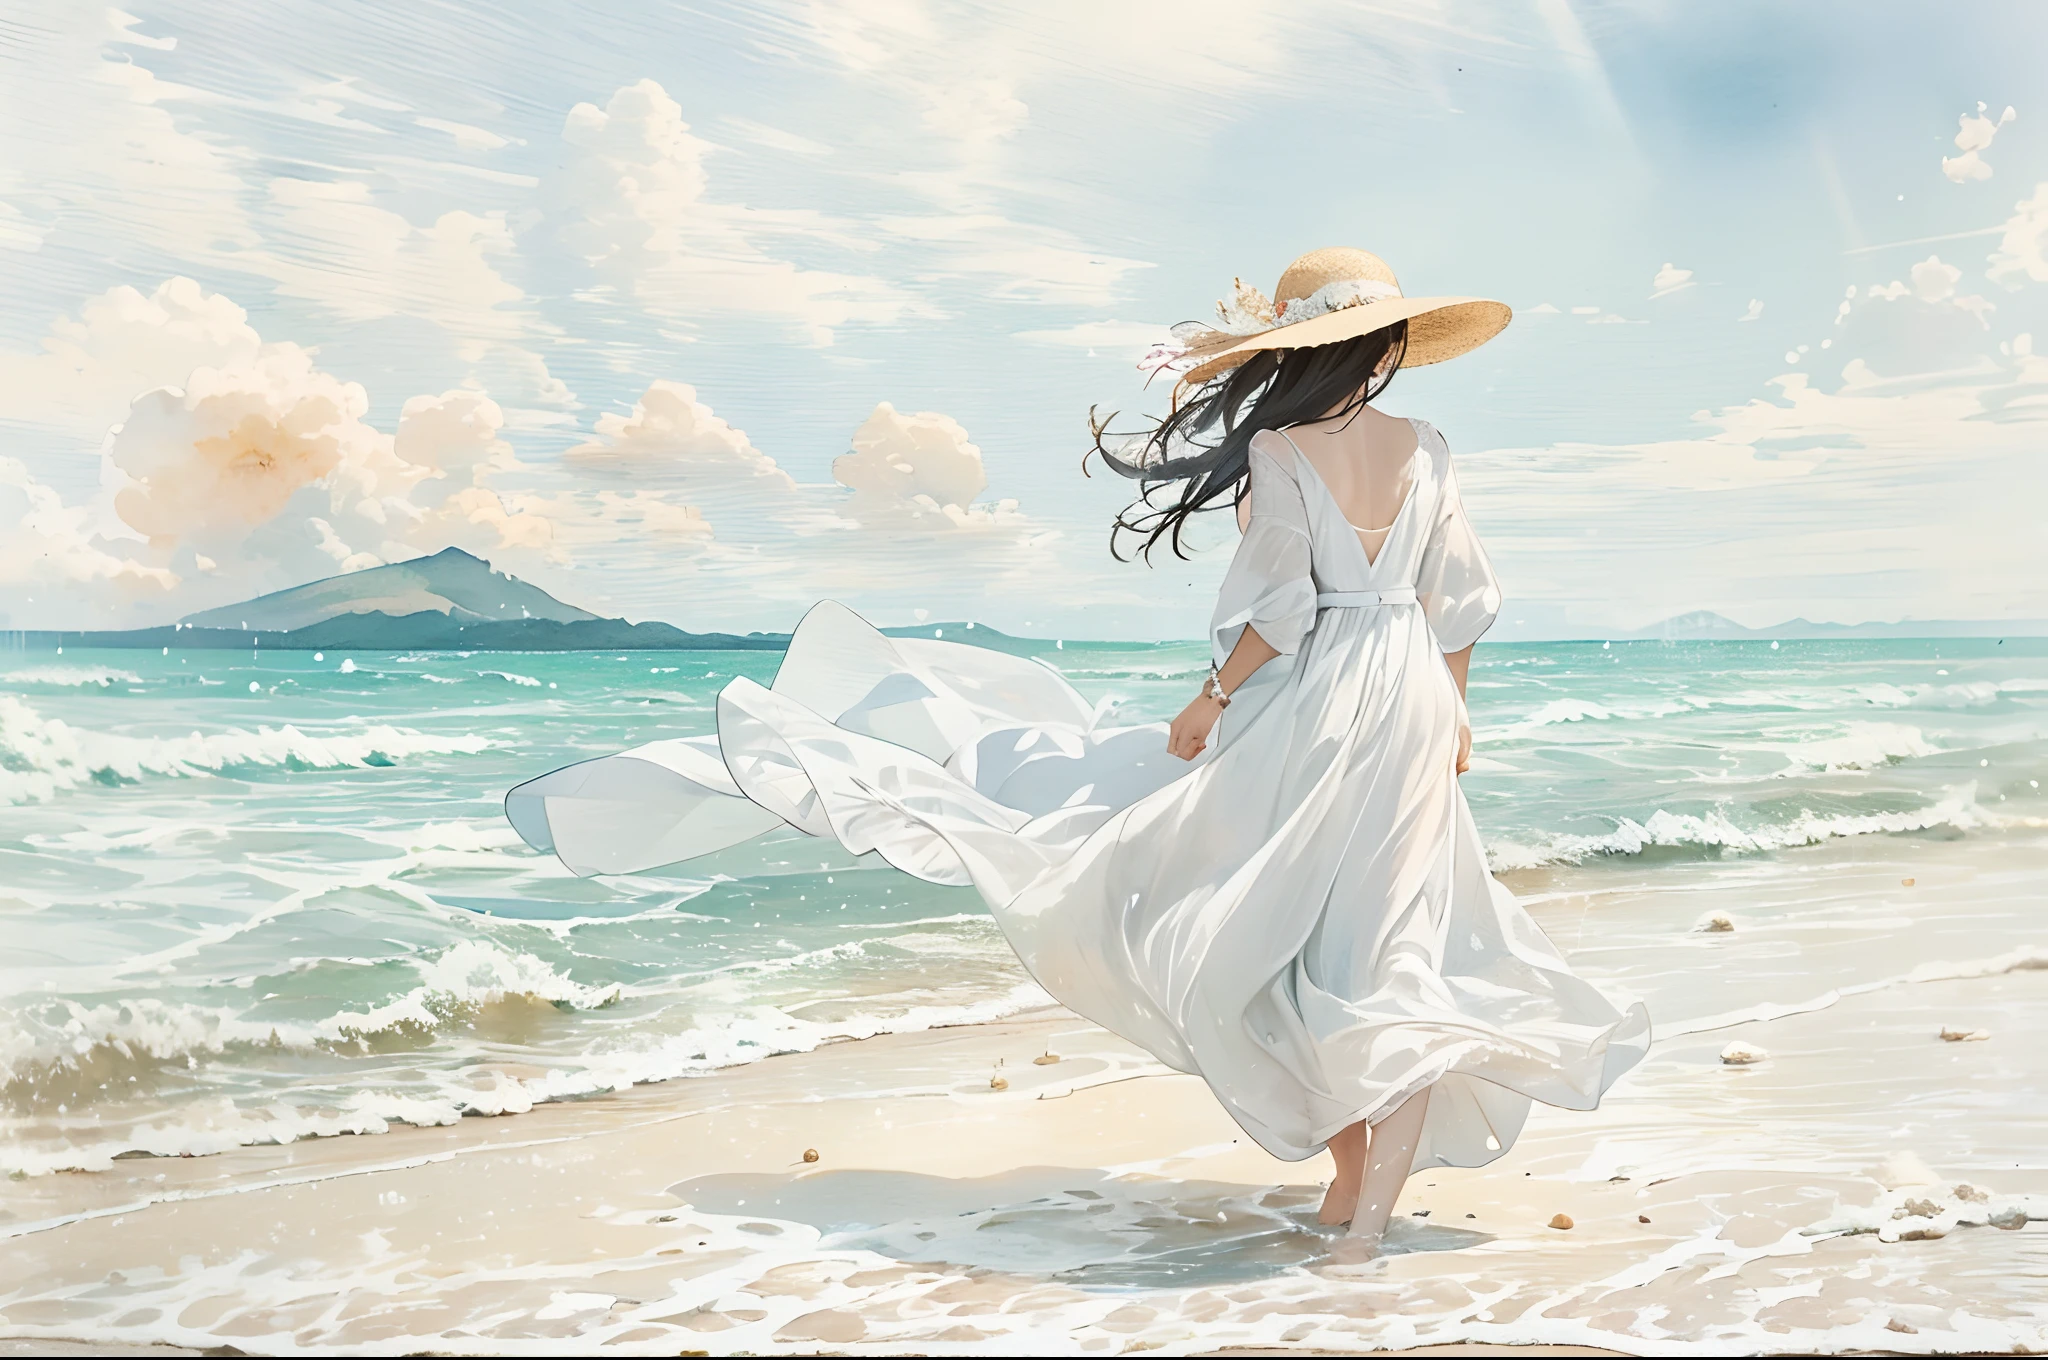 ผู้หญิงในชุดขาวเดินเล่นไปตามหาดทรายขาวสวยงามจนหมวกฟางปลิวไปตามลมแรง, และเธอก็รีบคว้ามันไว้ด้วยมือของเธอ. พื้นหลัง/// ทะเลที่สวยงามเป็นชายหาดน้ำตื้นที่มีคลื่น. หาดทรายขาวมีความสวยงามด้วยปะการังและเปลือกหอย. เหนือทะเลยังมีภูเขาเช่น Diamond Head และเรือยอทช์,โฟกัสนุ่มนวล , สีน้ำไล่ระดับแสง , เหมือนฝัน , พื้นหลังสีขาว